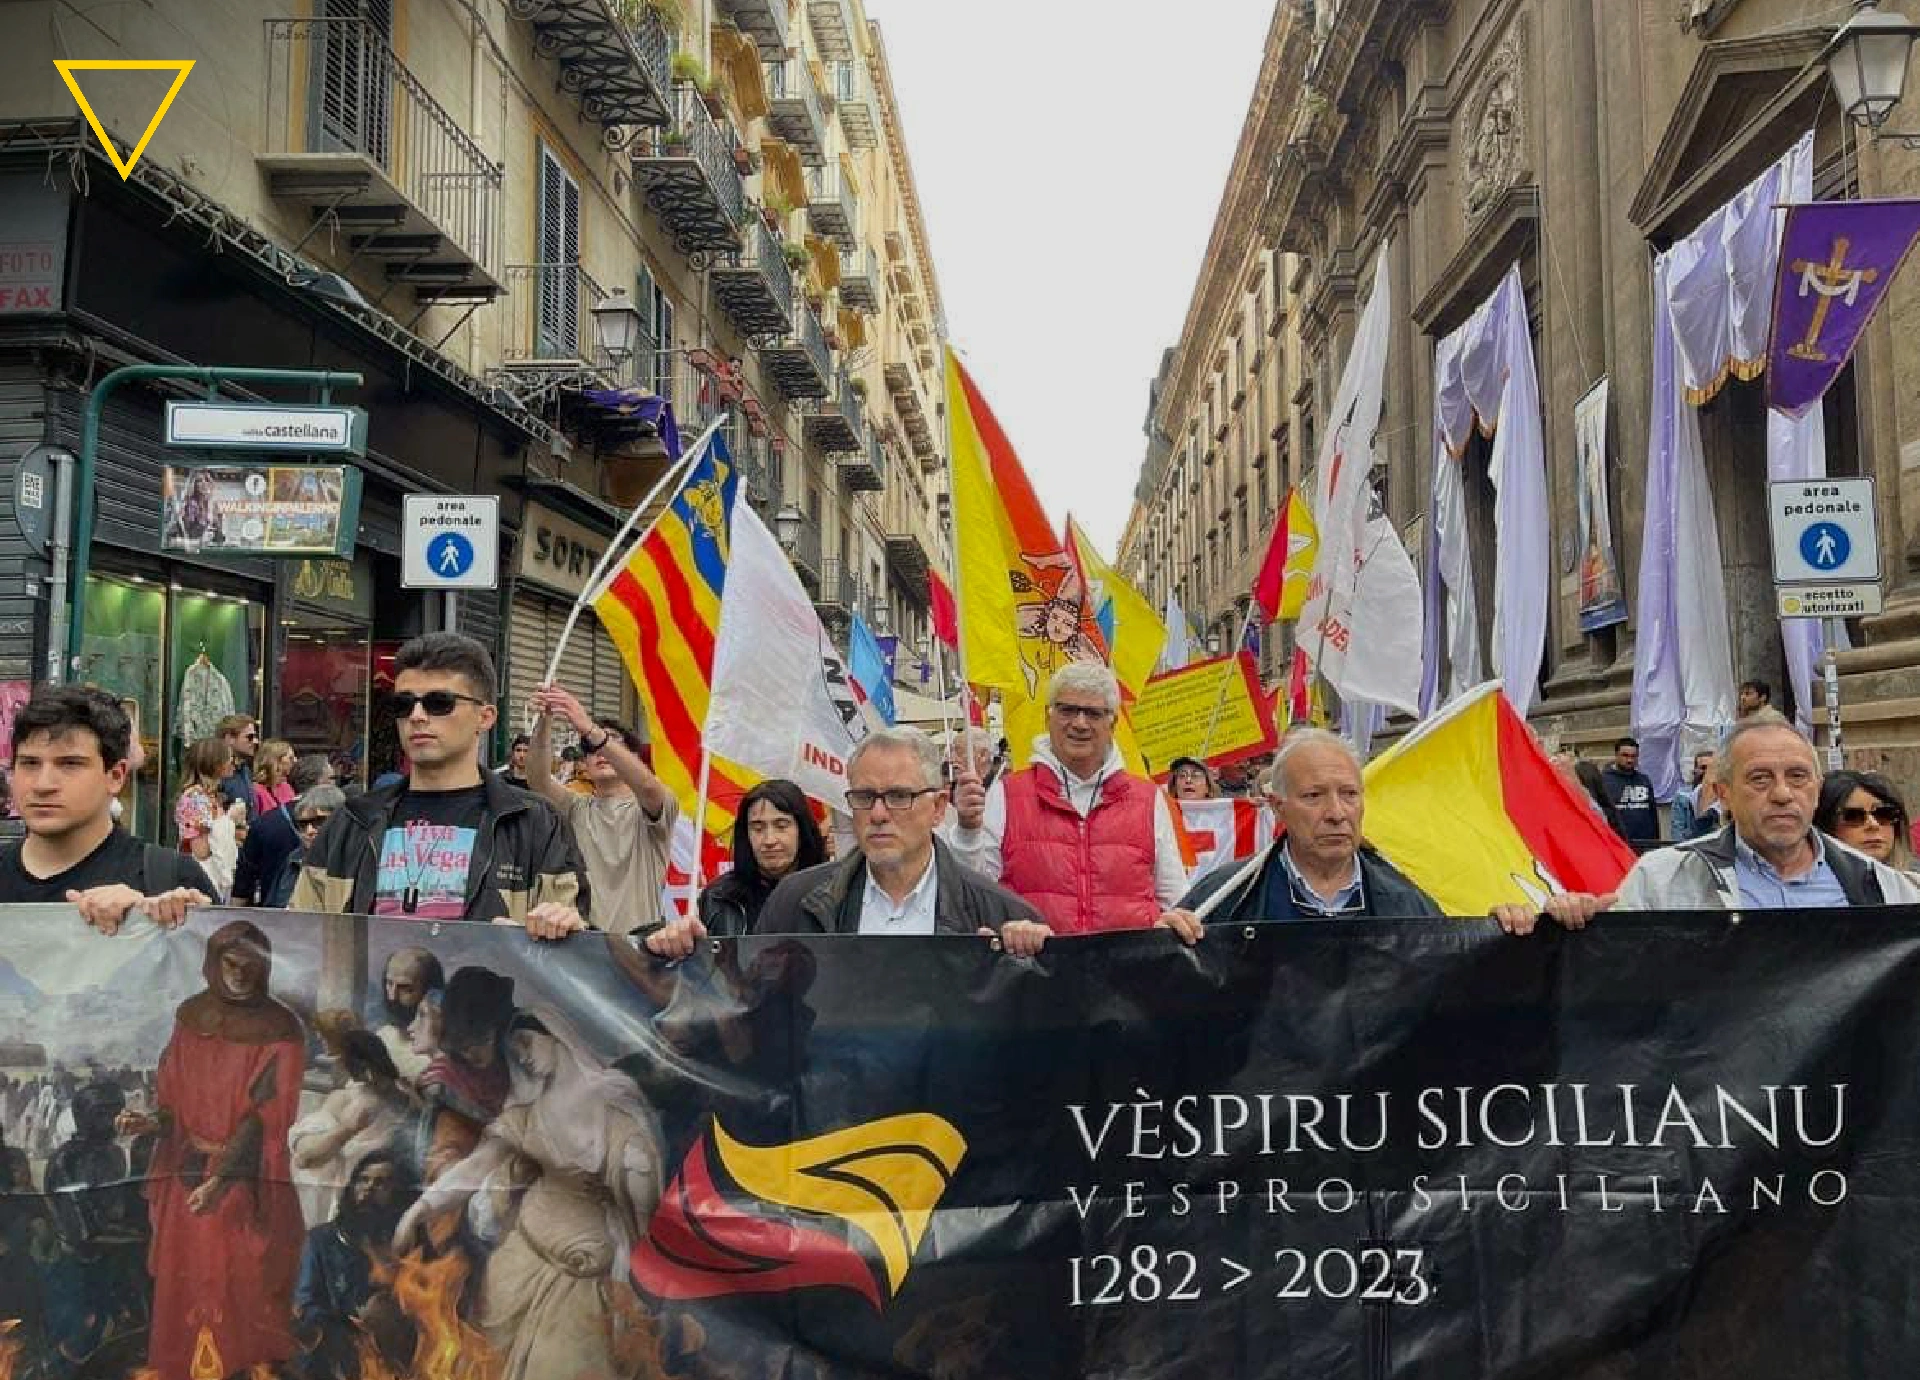 500 indipendentisti in marcia a Palermo per ricordare i Vespri siciliani